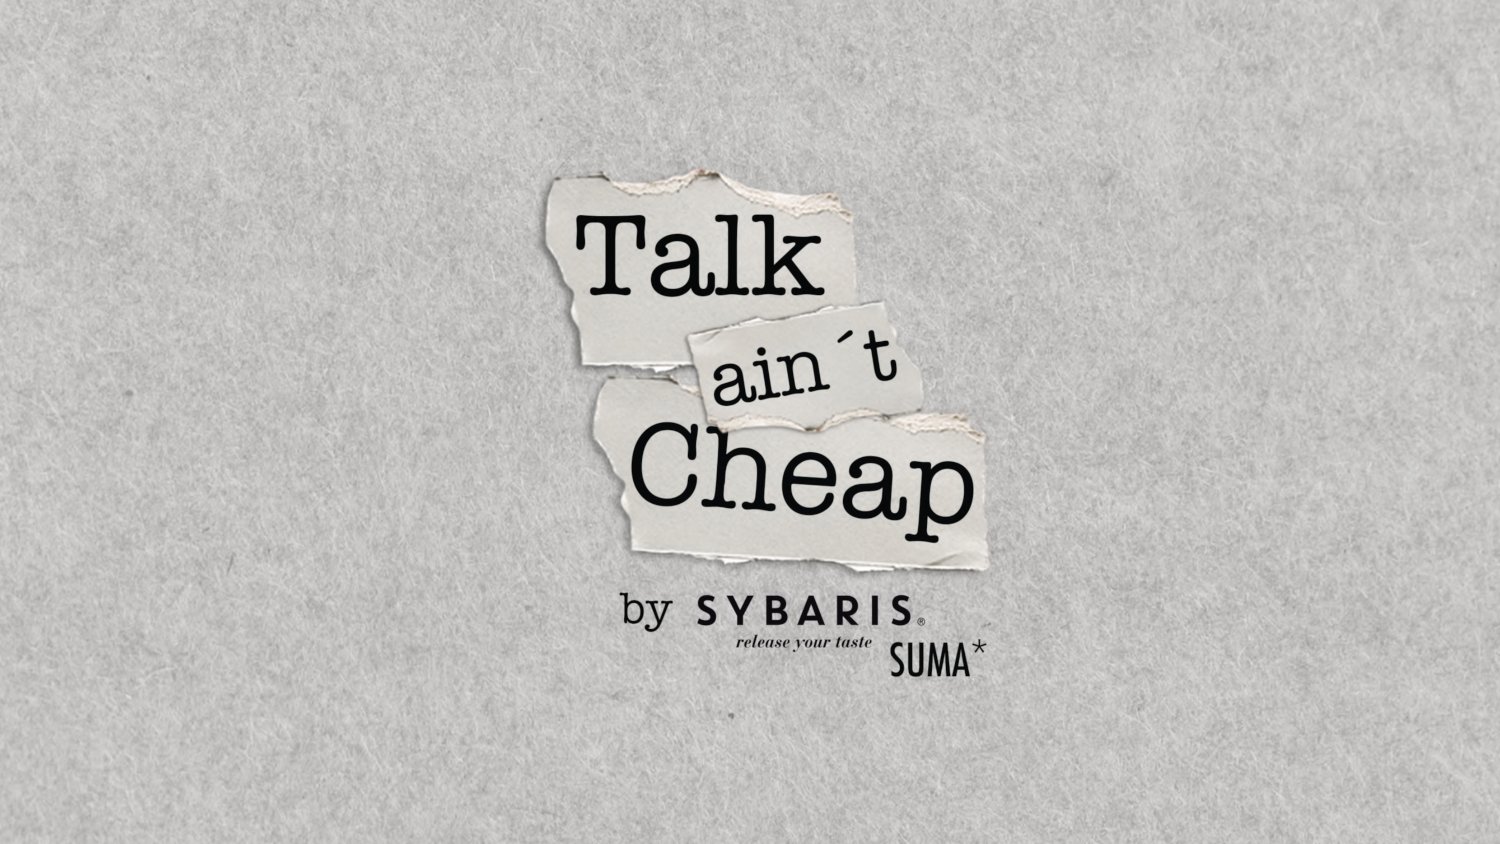 Talk ain't cheap